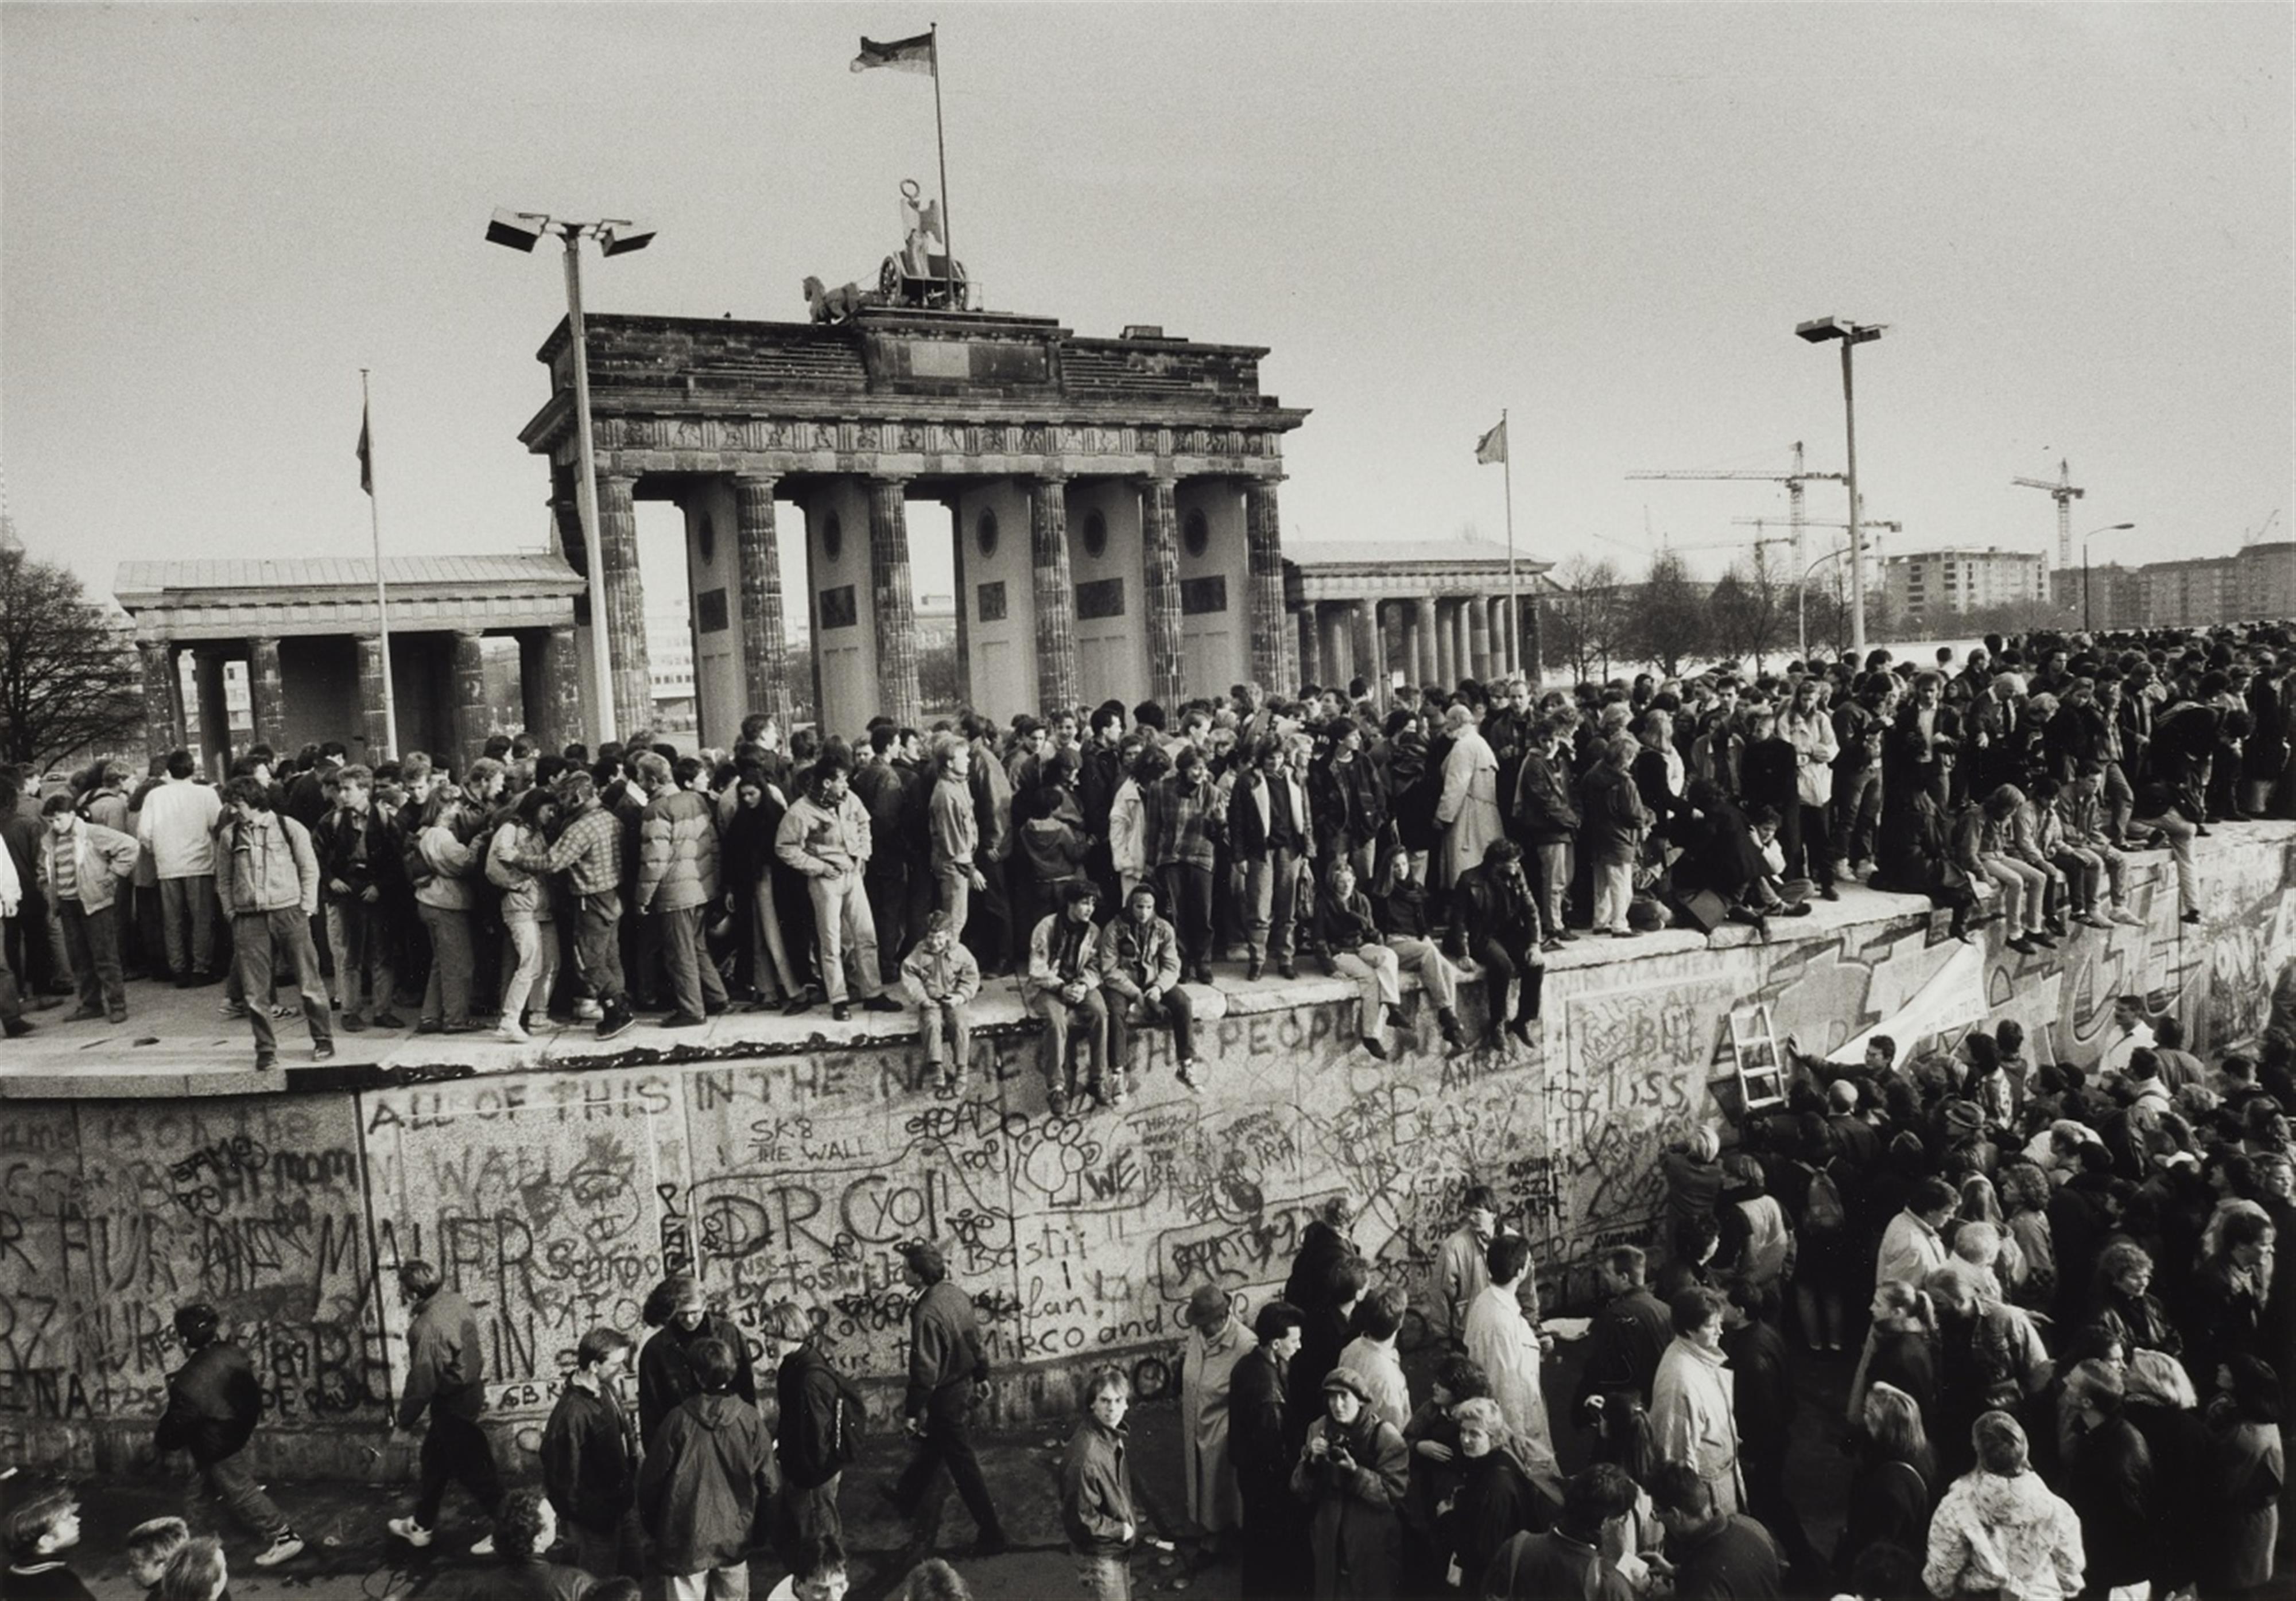 Barbara Klemm - Fall der Mauer, Berlin, 10. November 1989